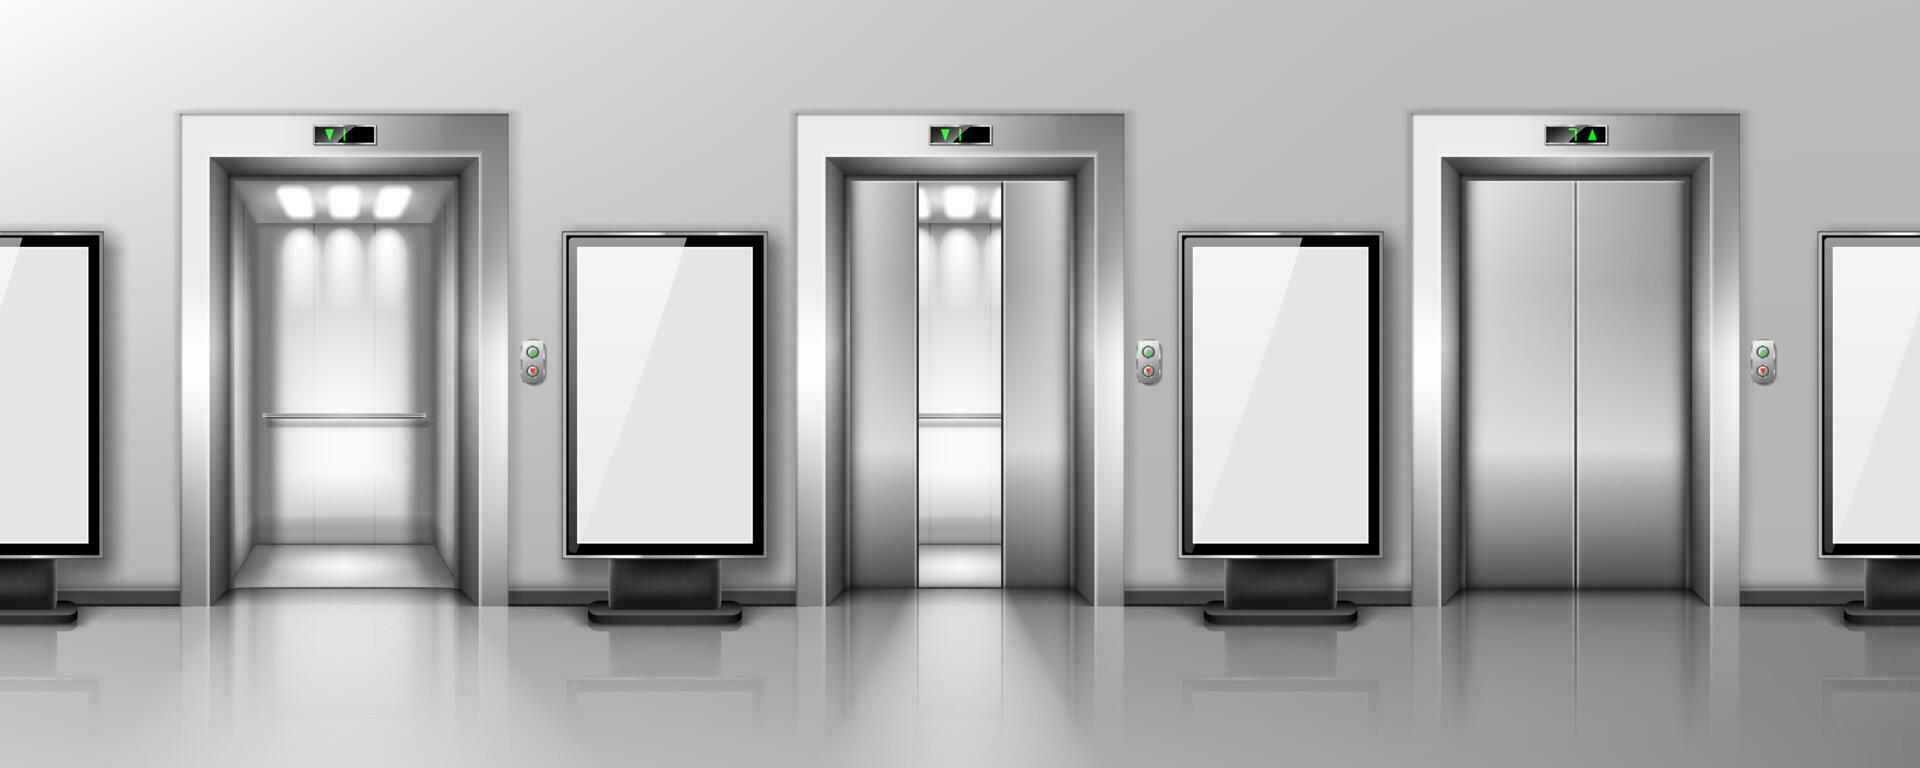 Billboards and elevator doors in office hallway vector